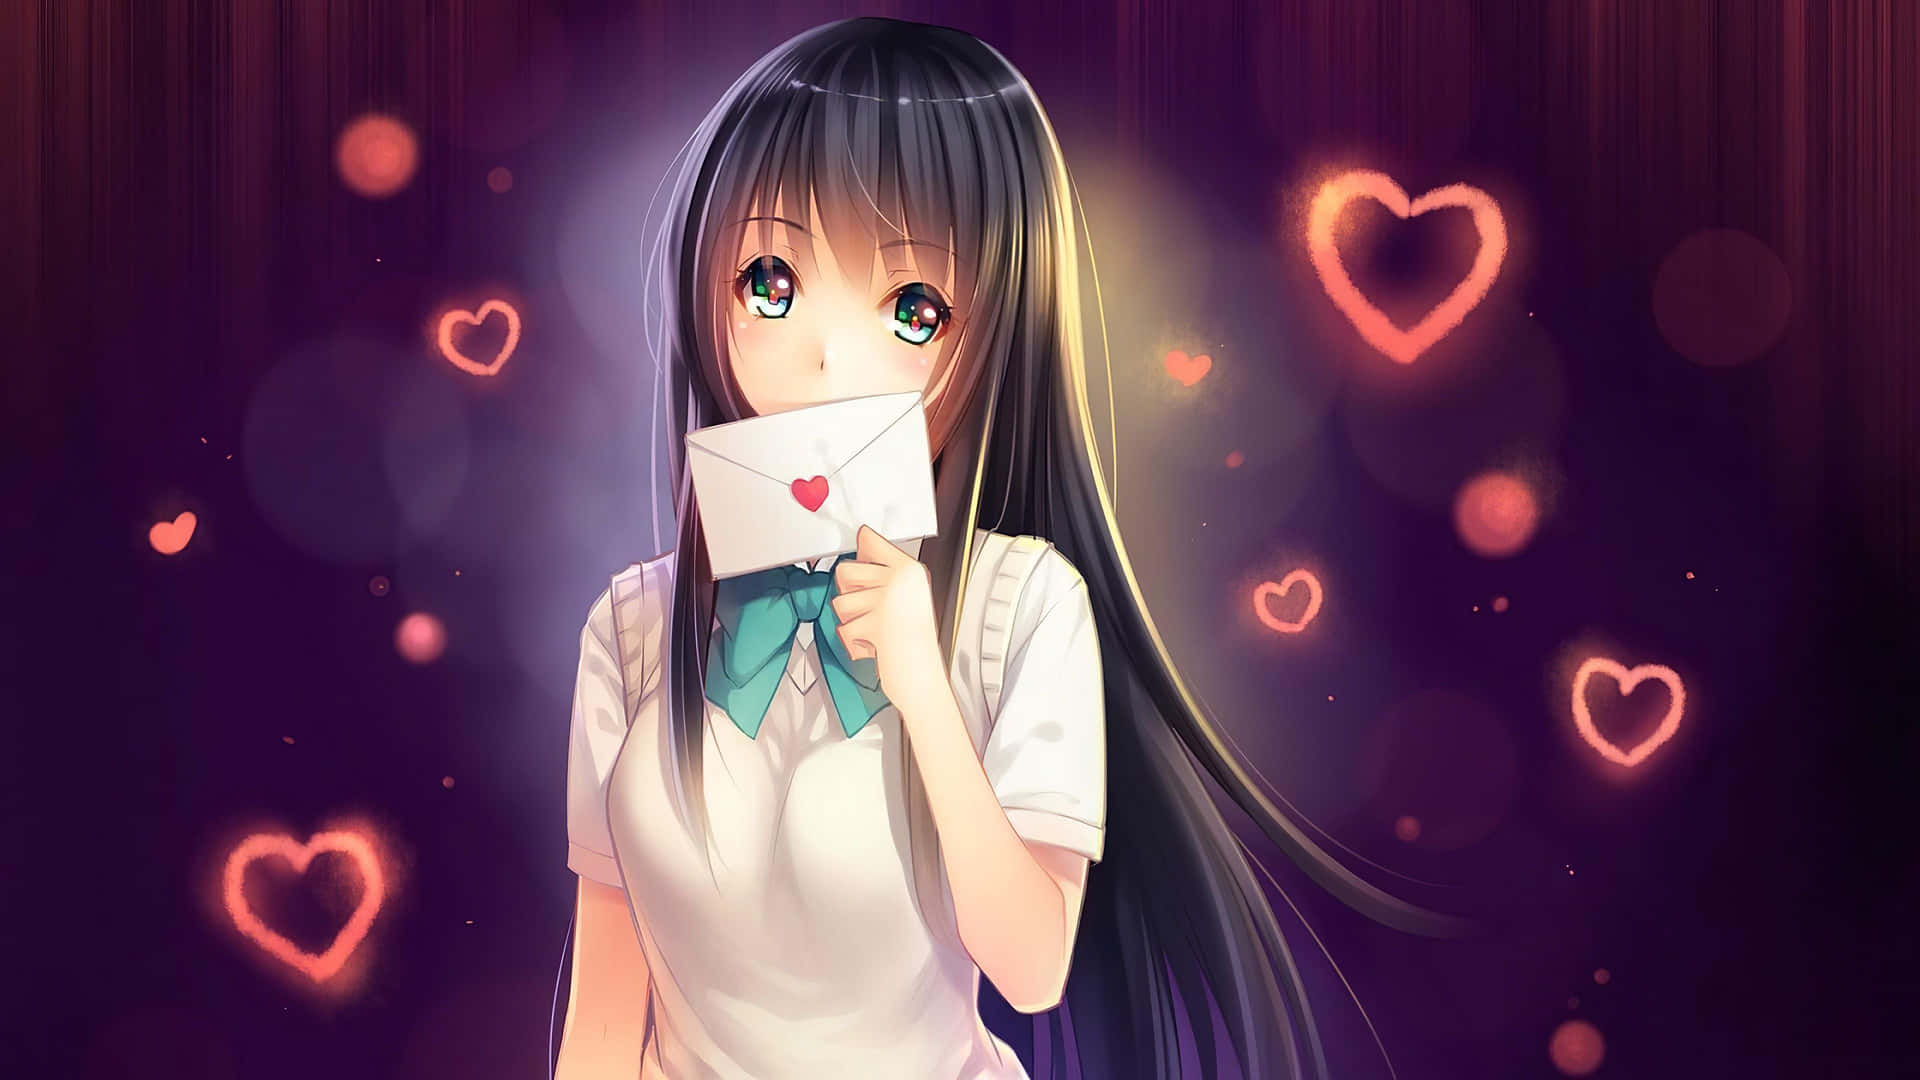 Anime Girl With Love Letter Wallpaper